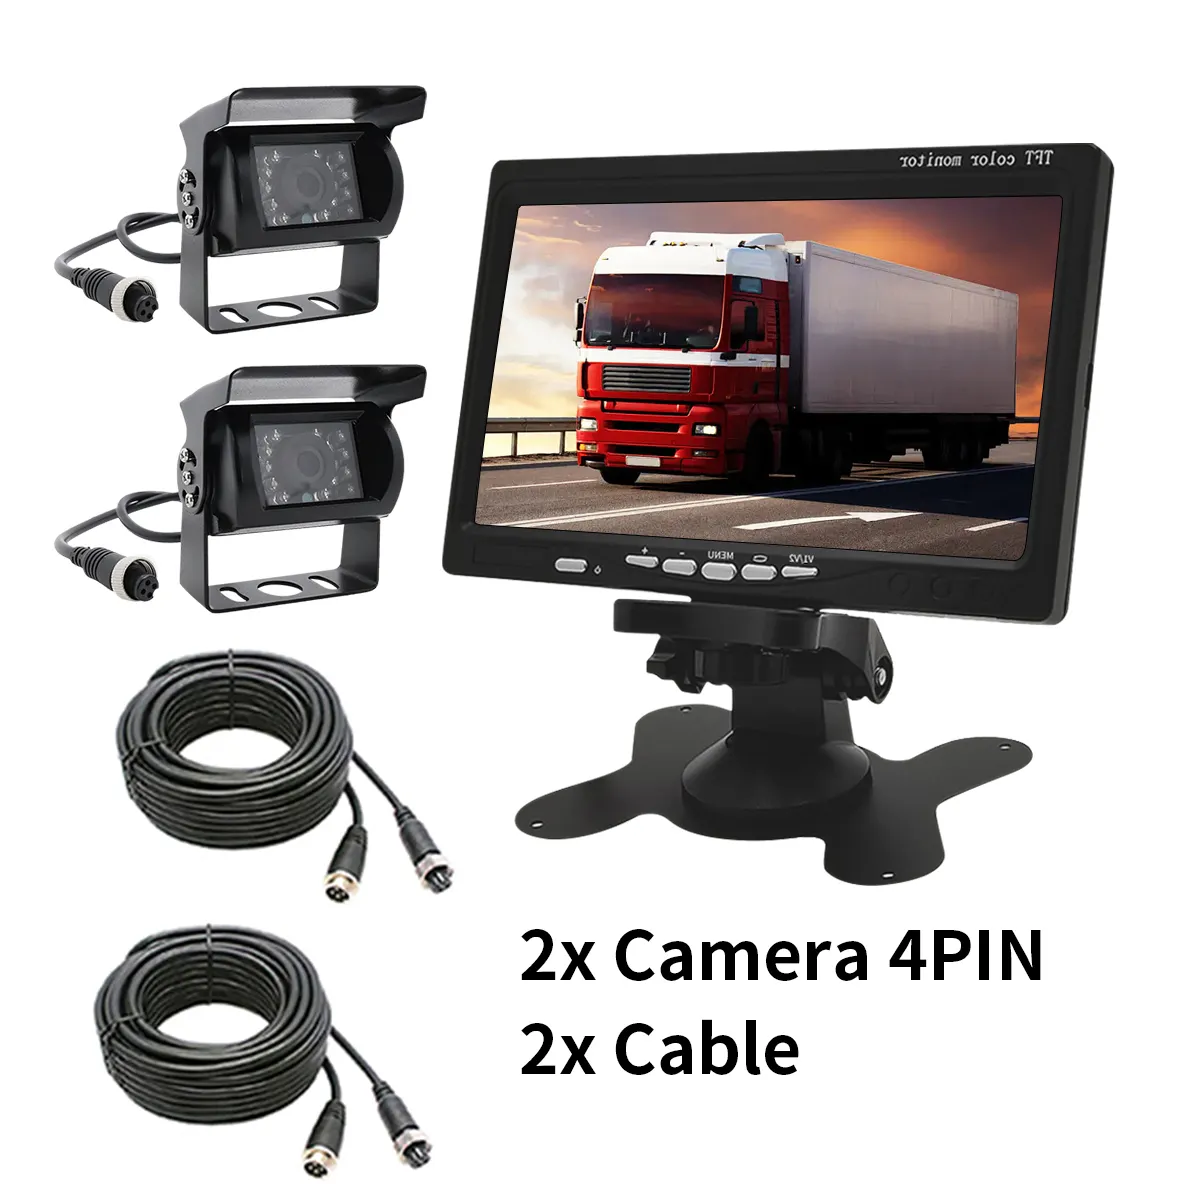 YWX Sistema de Câmera de Caminhão Monitor de TV para Carro 4 pinos 7 polegadas LCD Monitor para Caminhão Ônibus Van Câmera de Visão Noturna à prova d'água Assistente de Estacionamento